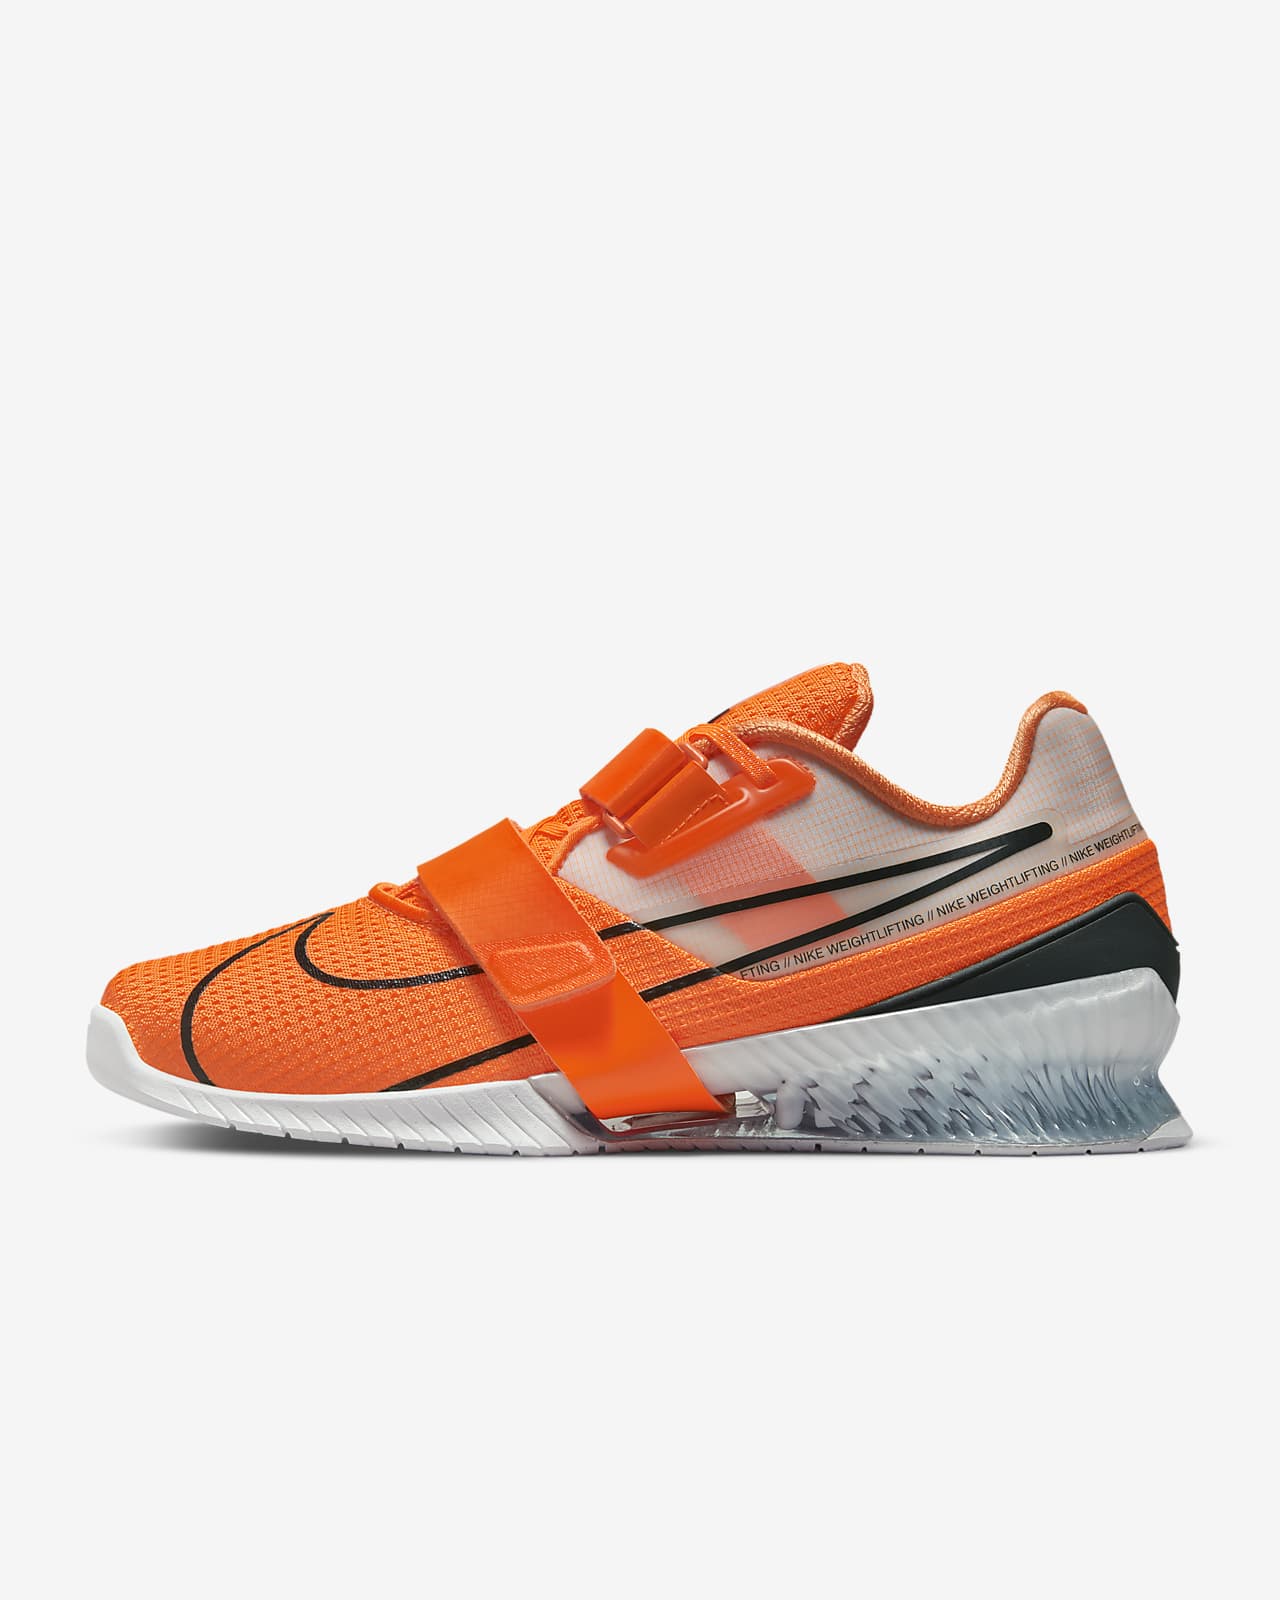 Nike Romaleos 4 Training Shoe